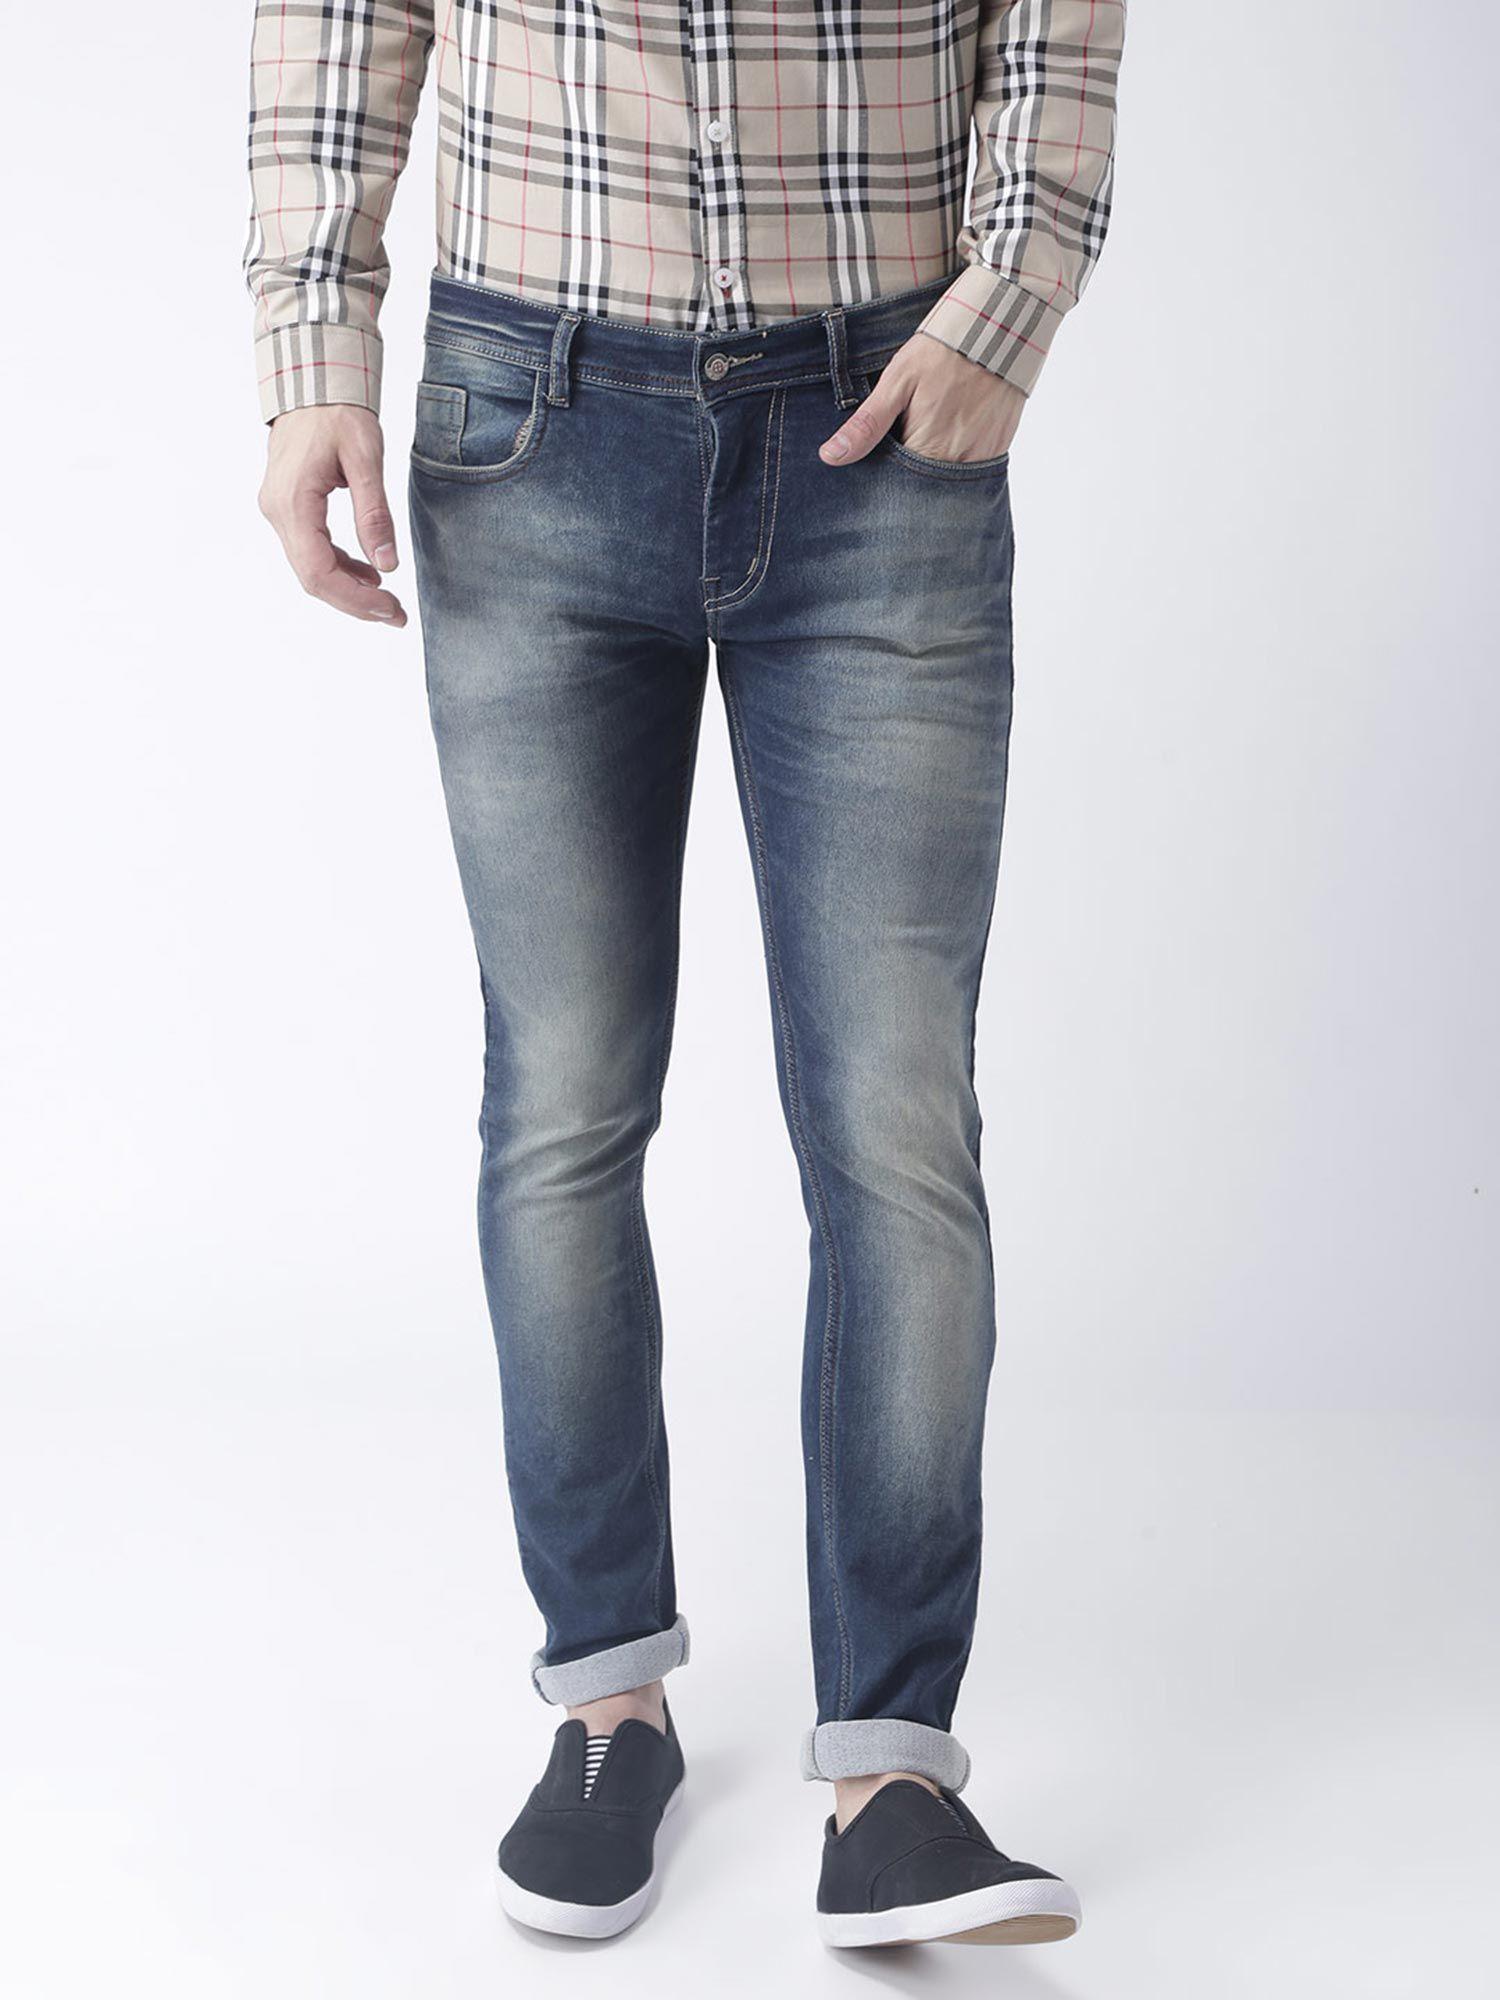 washing jeans designer bottom wear slim fit jeans blue color